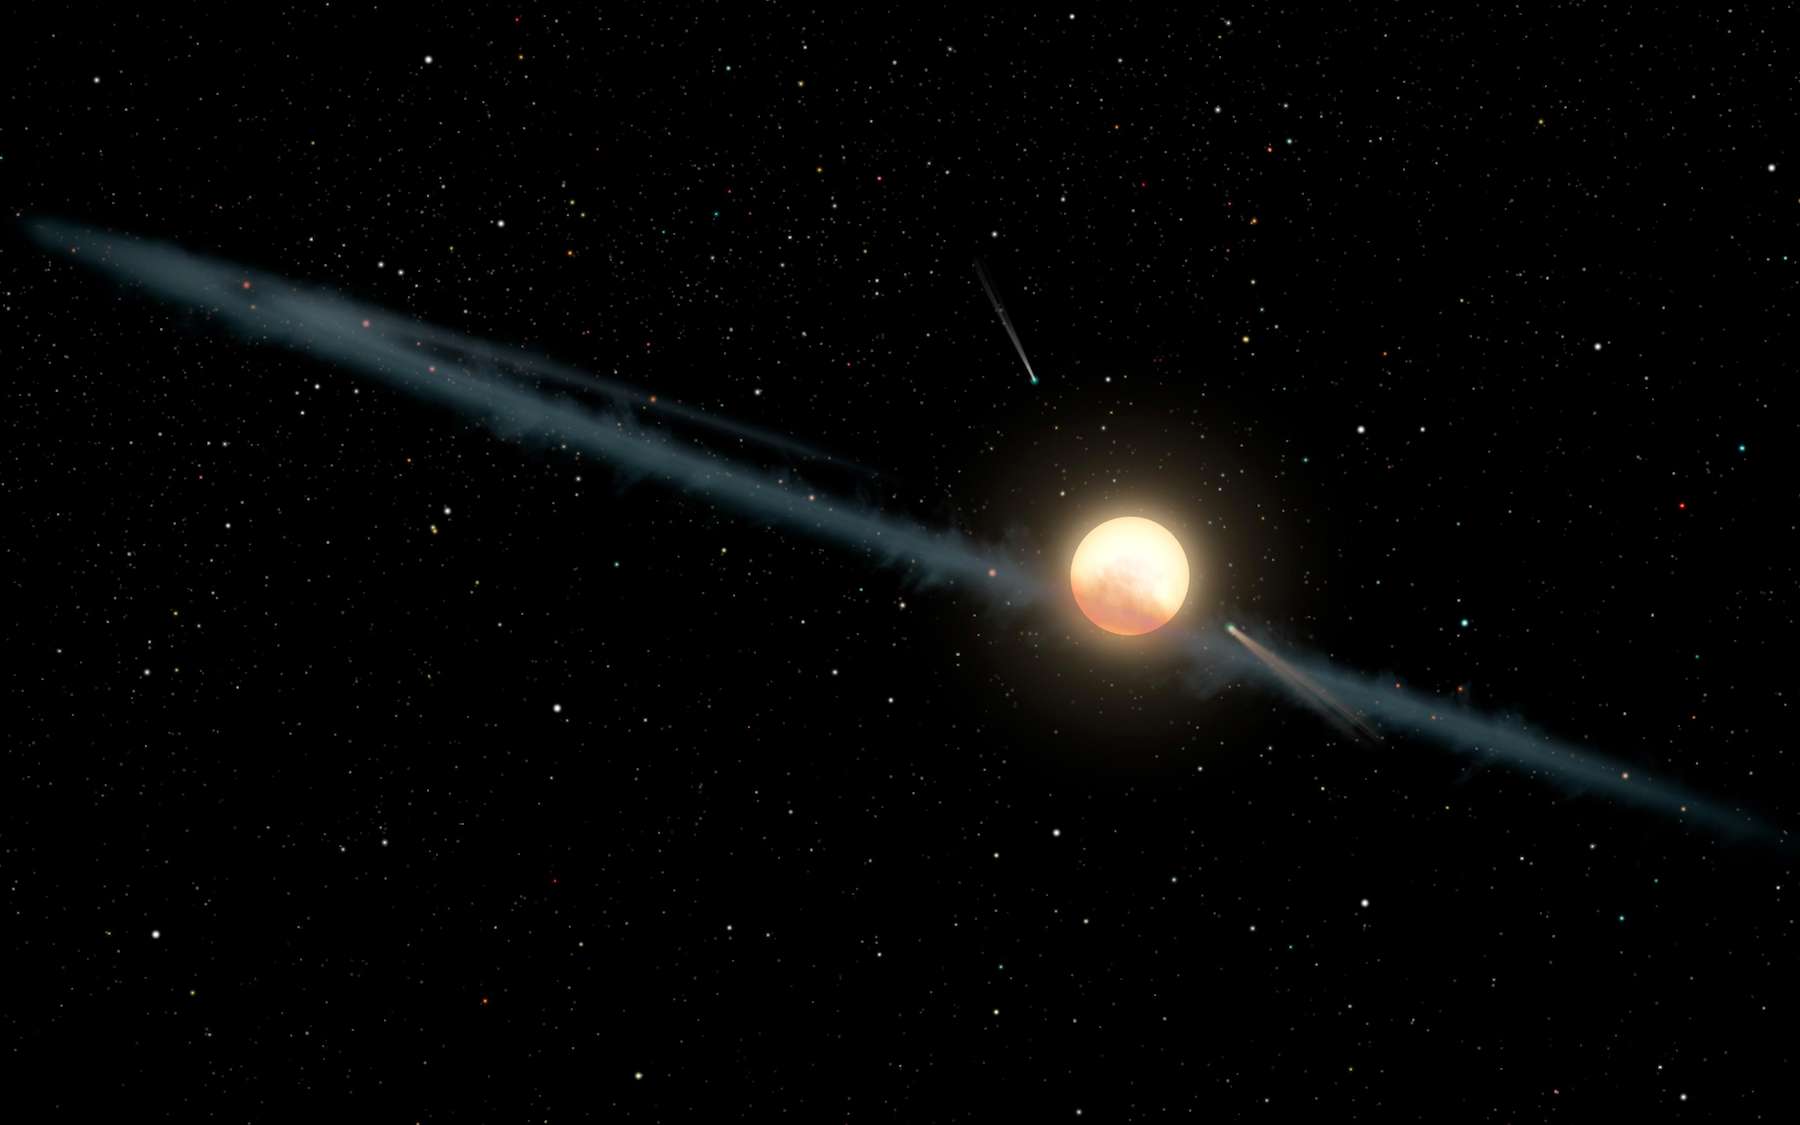 Représentation artistique d'une bande de poussière hypothétique autour de KIC 8462852, également connue sous le nom d'étoile de Tabby. Ceci n’est qu’une des nombreuses explications possibles du scintillement étrange de cette étoile. © Nasa, JPL